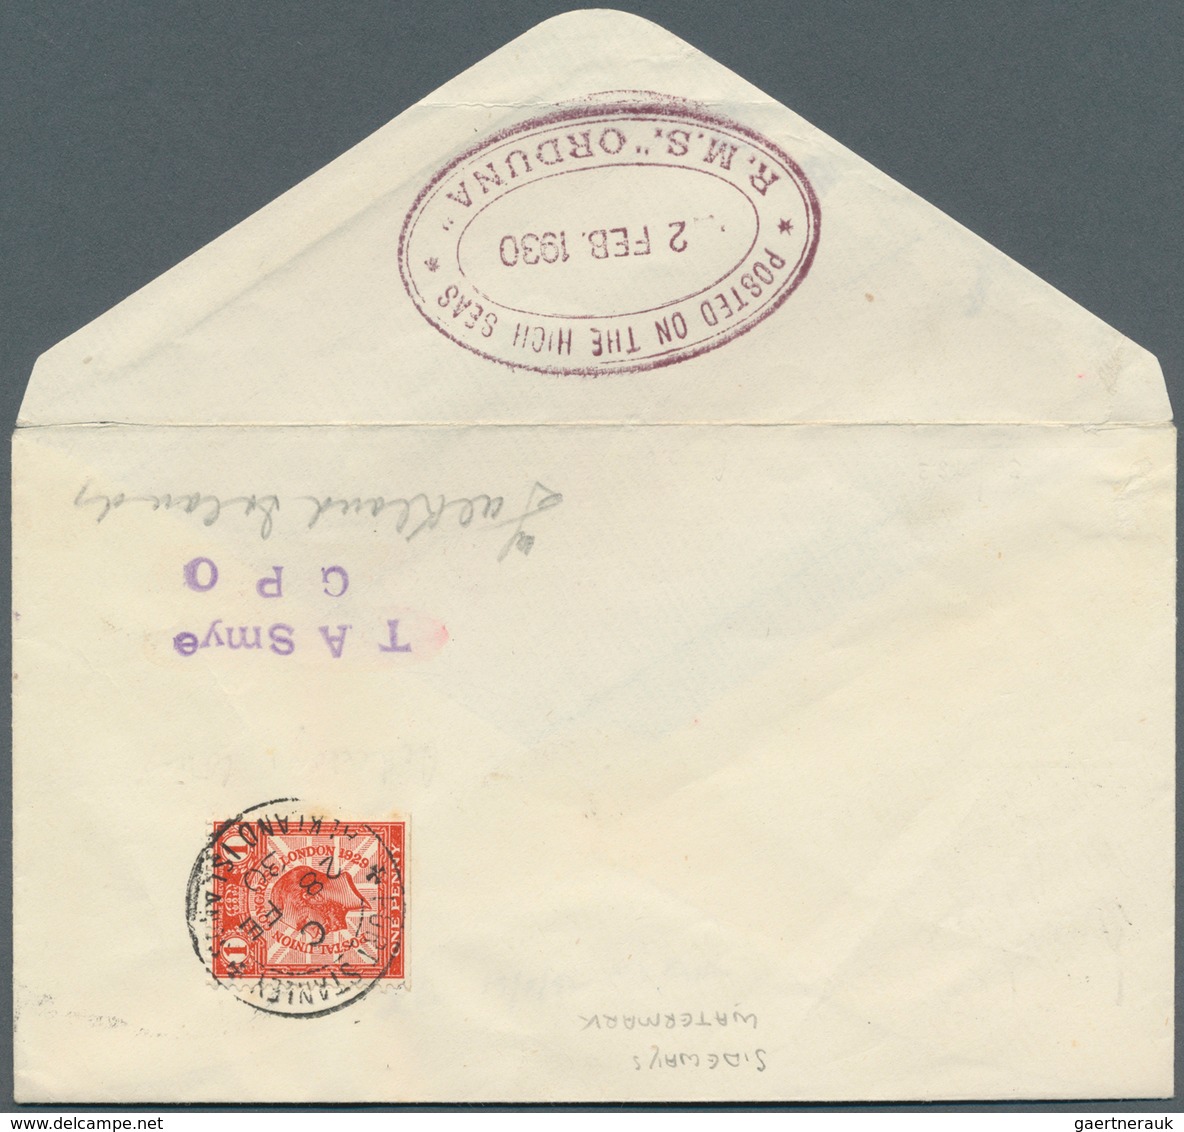 24724 Britische Kolonien: 1885/1947, group of ten better entires, e.g. four covers Aden correspondence, Bi